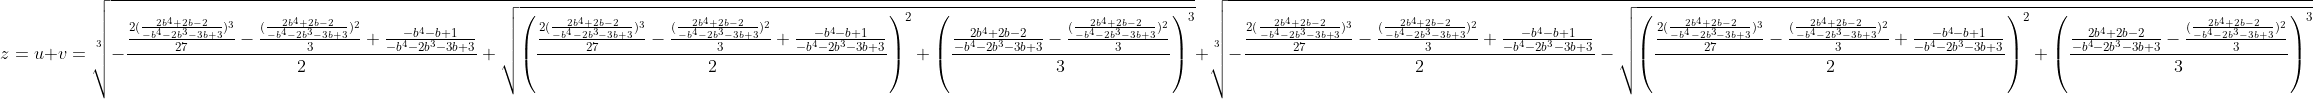 [latex]z = u+v = \sqrt[3]{-\frac{\frac {2(\frac{2b^4+2b-2}{-b^4-2b^3-3b+3})^3}{27} - \frac{(\frac{2b^4+2b-2}{-b^4-2b^3-3b+3})^2}3 + \frac{-b^4-b+1}{-b^4-2b^3-3b+3}}2 + \sqrt{\left(\frac{\frac {2(\frac{2b^4+2b-2}{-b^4-2b^3-3b+3})^3}{27} - \frac{(\frac{2b^4+2b-2}{-b^4-2b^3-3b+3})^2}3 + \frac{-b^4-b+1}{-b^4-2b^3-3b+3}}2\right)^2 + \left(\frac{\frac{2b^4+2b-2}{-b^4-2b^3-3b+3} - \frac{(\frac{2b^4+2b-2}{-b^4-2b^3-3b+3})^2}3}3\right)^3}} + \sqrt[3]{-\frac{\frac {2(\frac{2b^4+2b-2}{-b^4-2b^3-3b+3})^3}{27} - \frac{(\frac{2b^4+2b-2}{-b^4-2b^3-3b+3})^2}3 + \frac{-b^4-b+1}{-b^4-2b^3-3b+3}}2 - \sqrt{\left(\frac{\frac {2(\frac{2b^4+2b-2}{-b^4-2b^3-3b+3})^3}{27} - \frac{(\frac{2b^4+2b-2}{-b^4-2b^3-3b+3})^2}3 + \frac{-b^4-b+1}{-b^4-2b^3-3b+3}}2\right)^2 + \left(\frac{\frac{2b^4+2b-2}{-b^4-2b^3-3b+3} - \frac{(\frac{2b^4+2b-2}{-b^4-2b^3-3b+3})^2}3}3\right)^3}}[/latex]